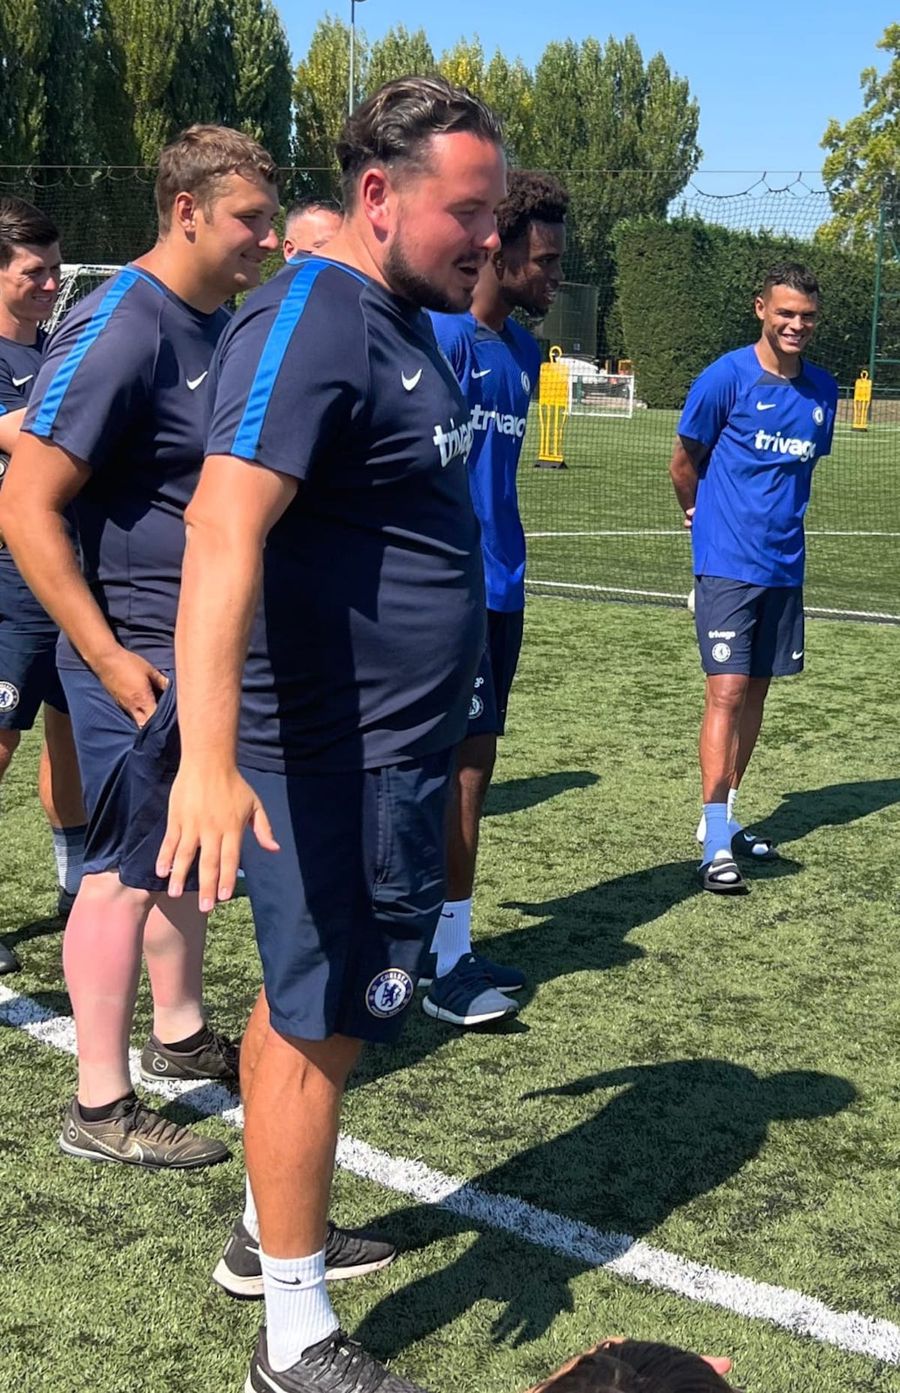 Român care a lucrat în ultimii 2 ani în academia lui Chelsea: „Importul de antrenori tineri străini e singura șansă pentru cluburile din România să se dezvolte și să crească jucători buni”